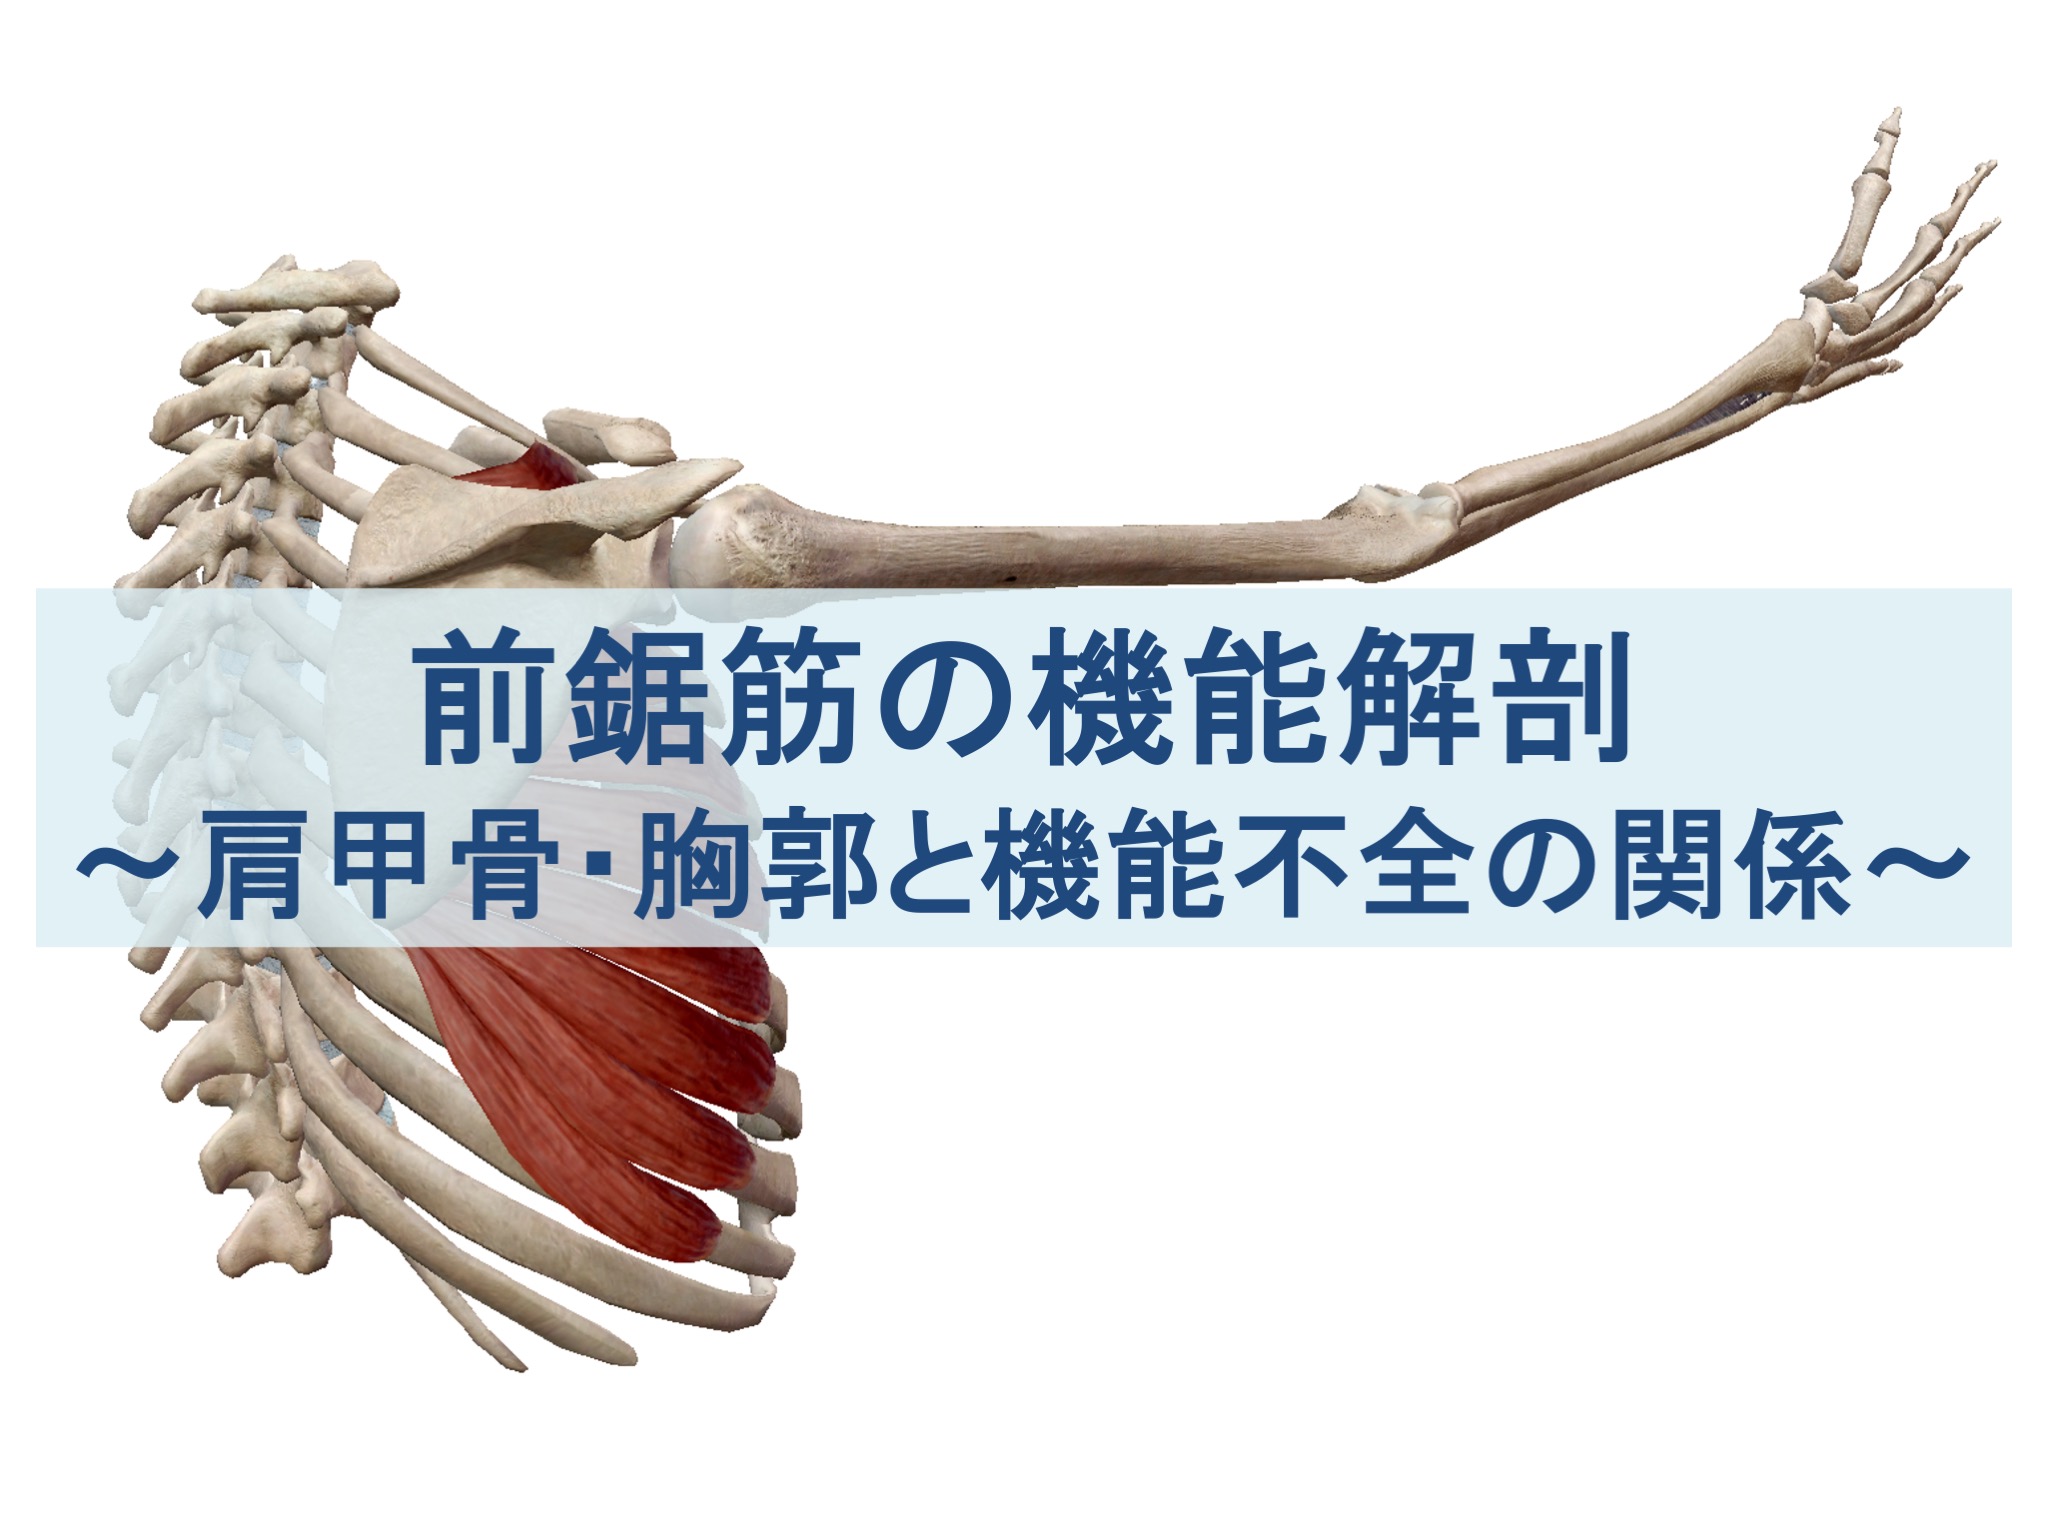 前鋸筋の機能解剖と機能不全の原因を肩甲骨・胸郭から考える記事のトップ画像